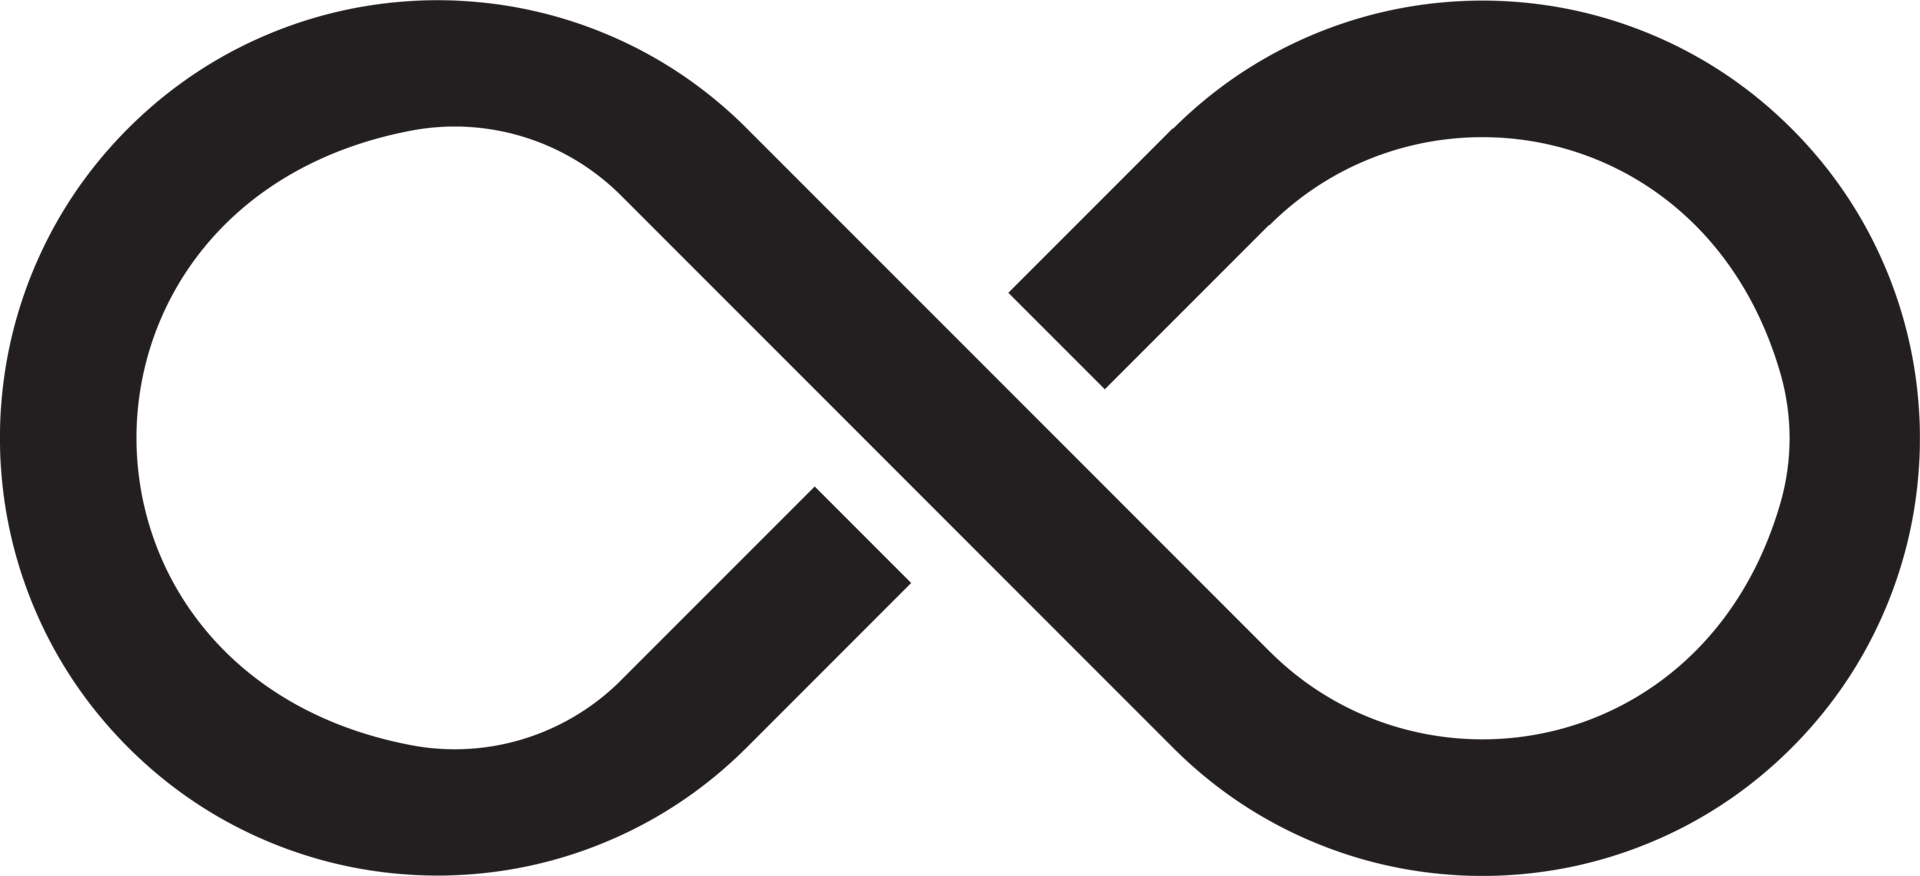 Infinity symbol clip art png